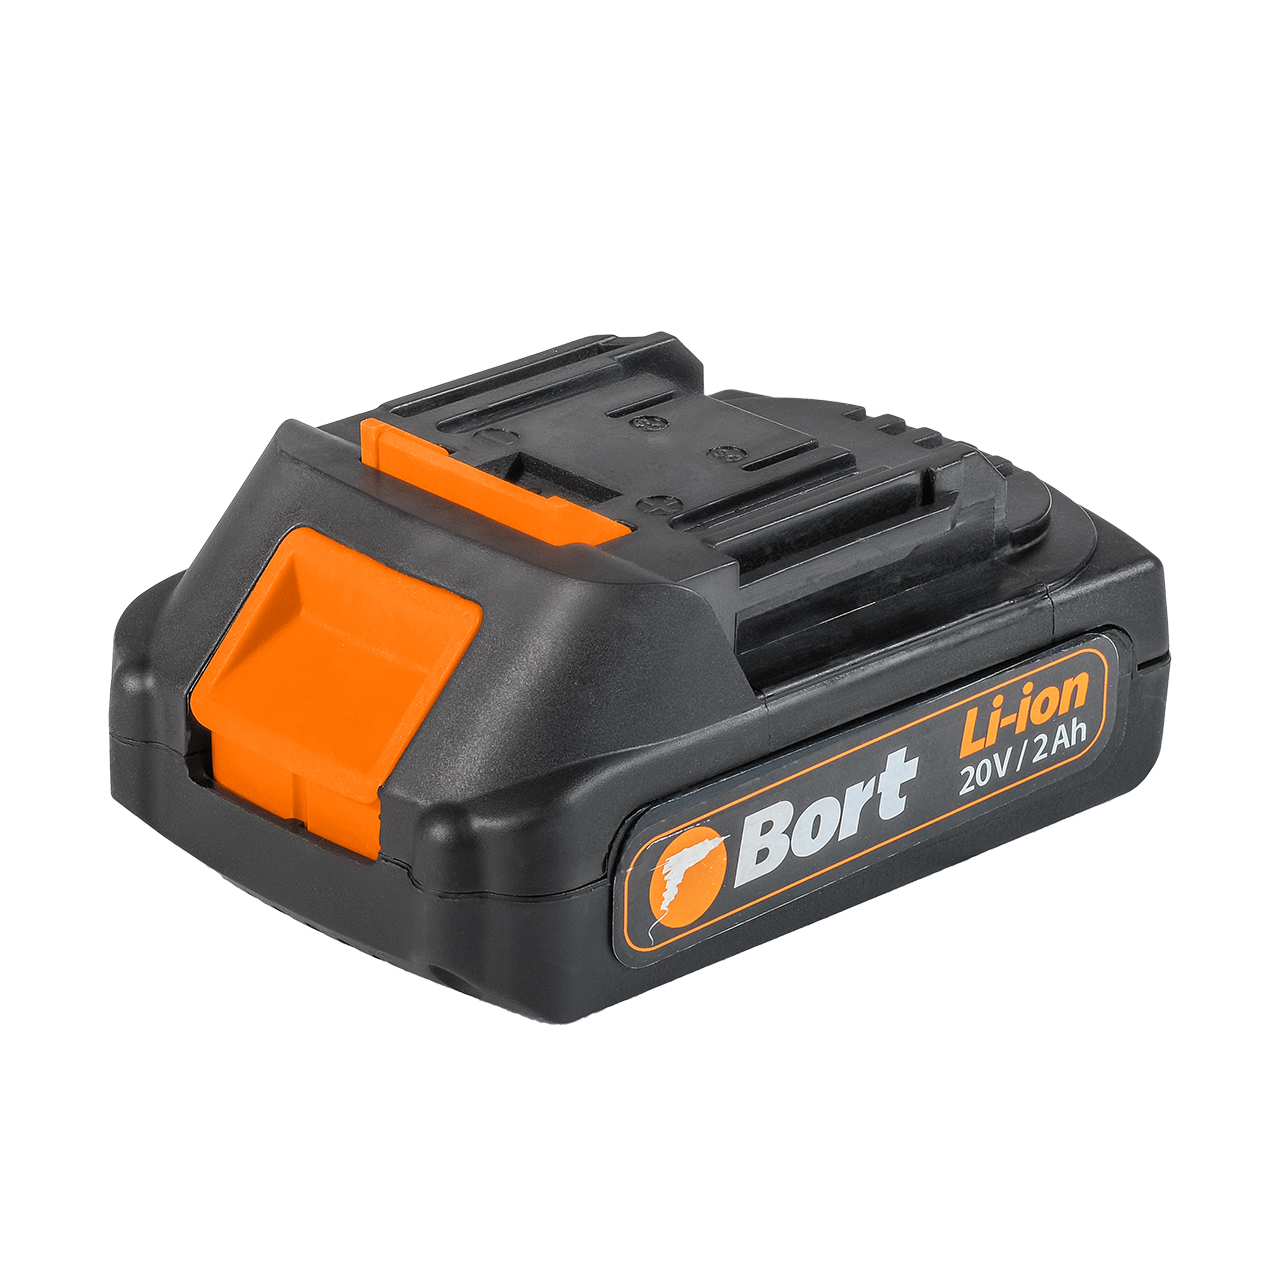 Батарея аккумуляторная Bort BA-20Li 93415940 батарея аккумуляторная bort